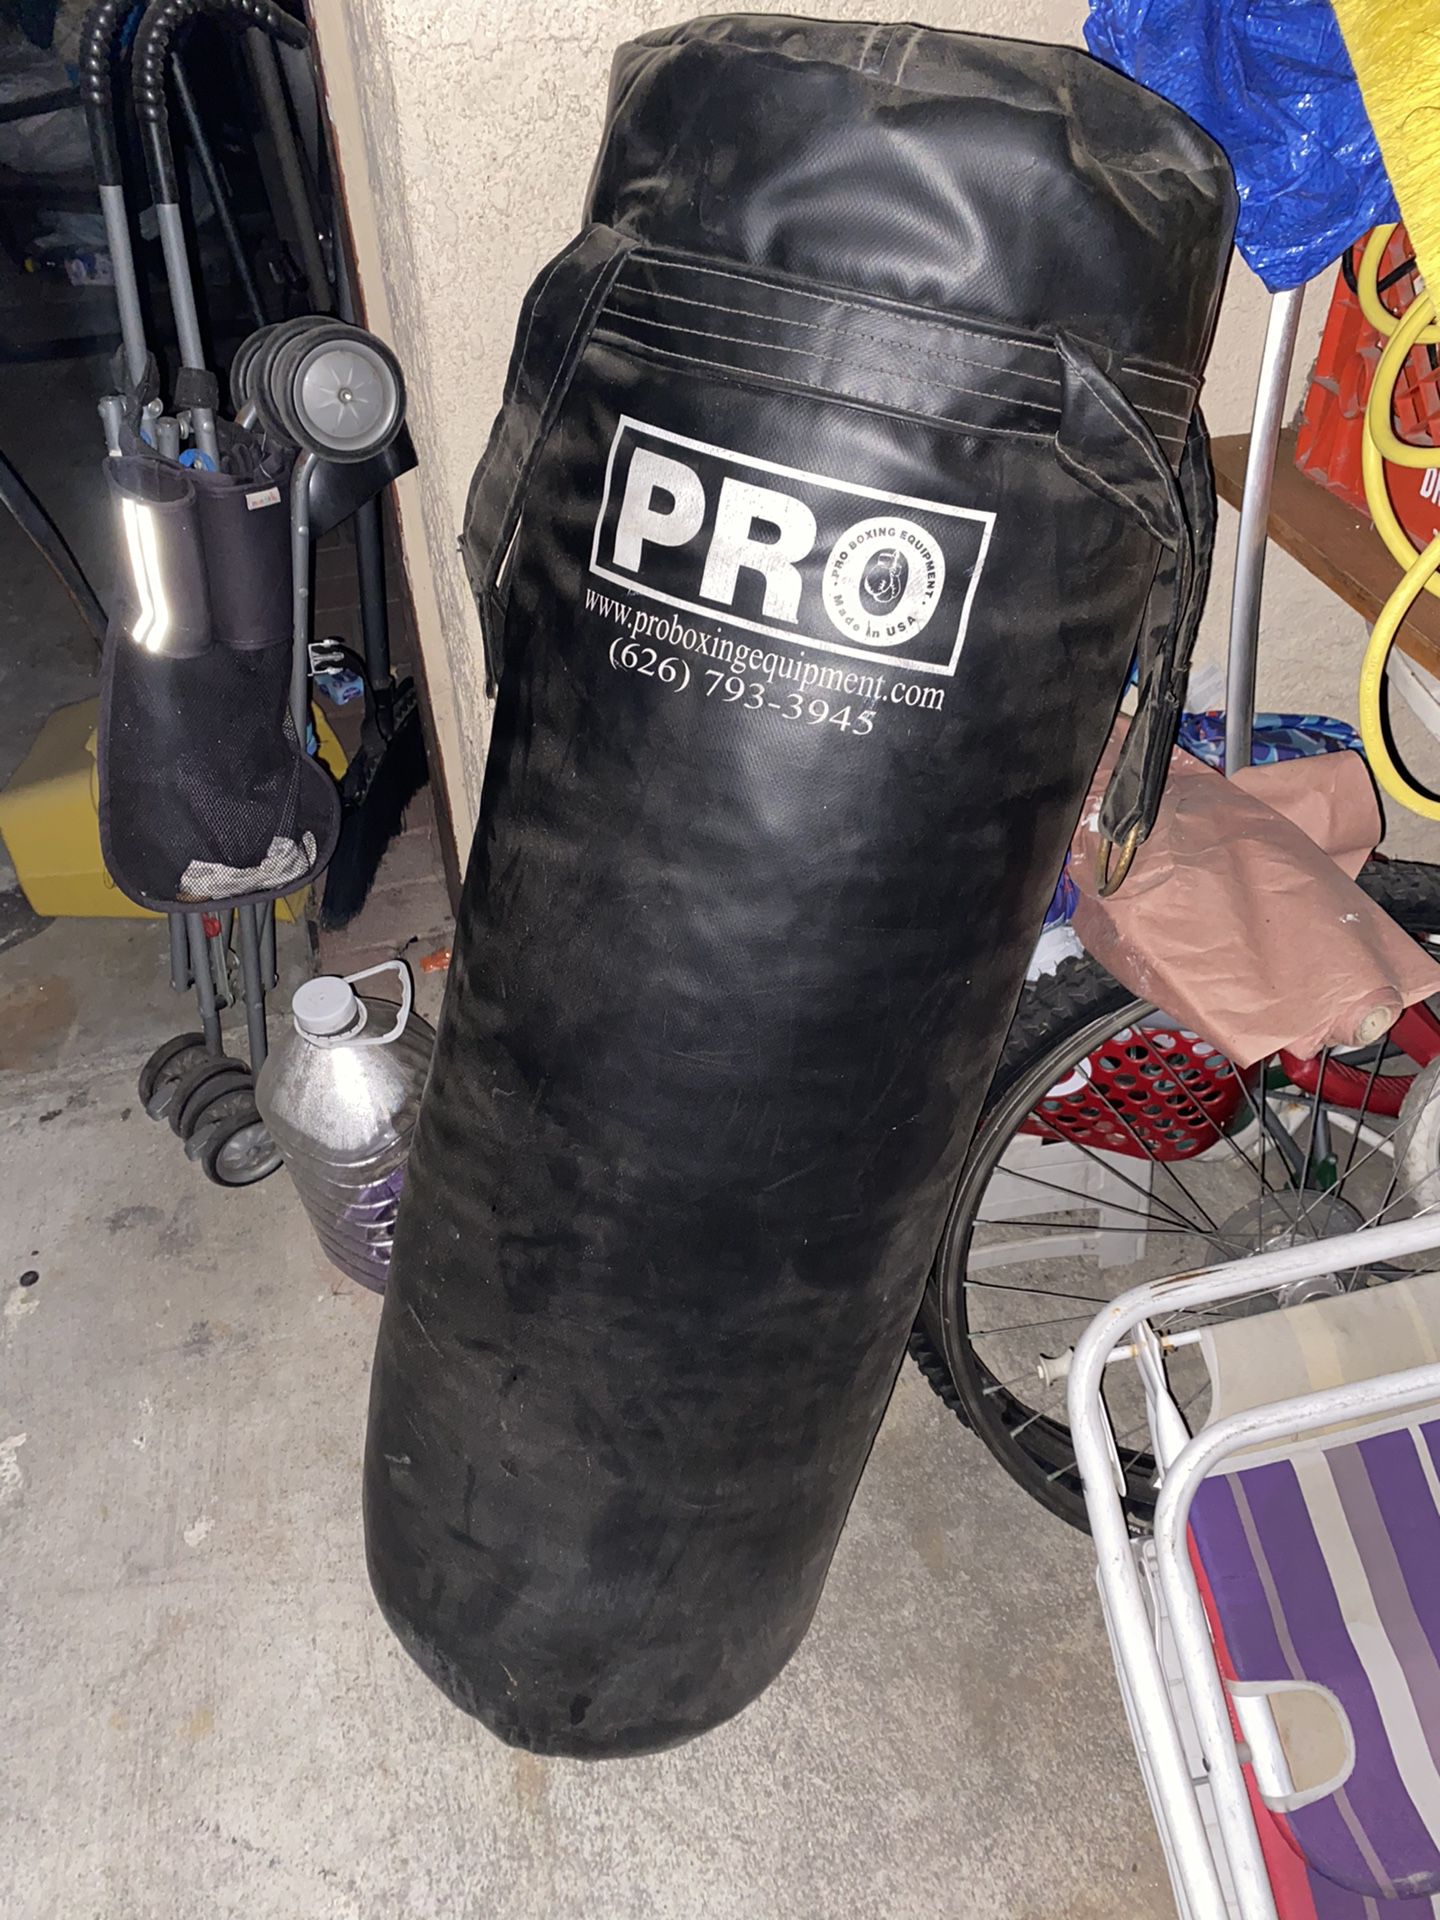 Boxing punching bag